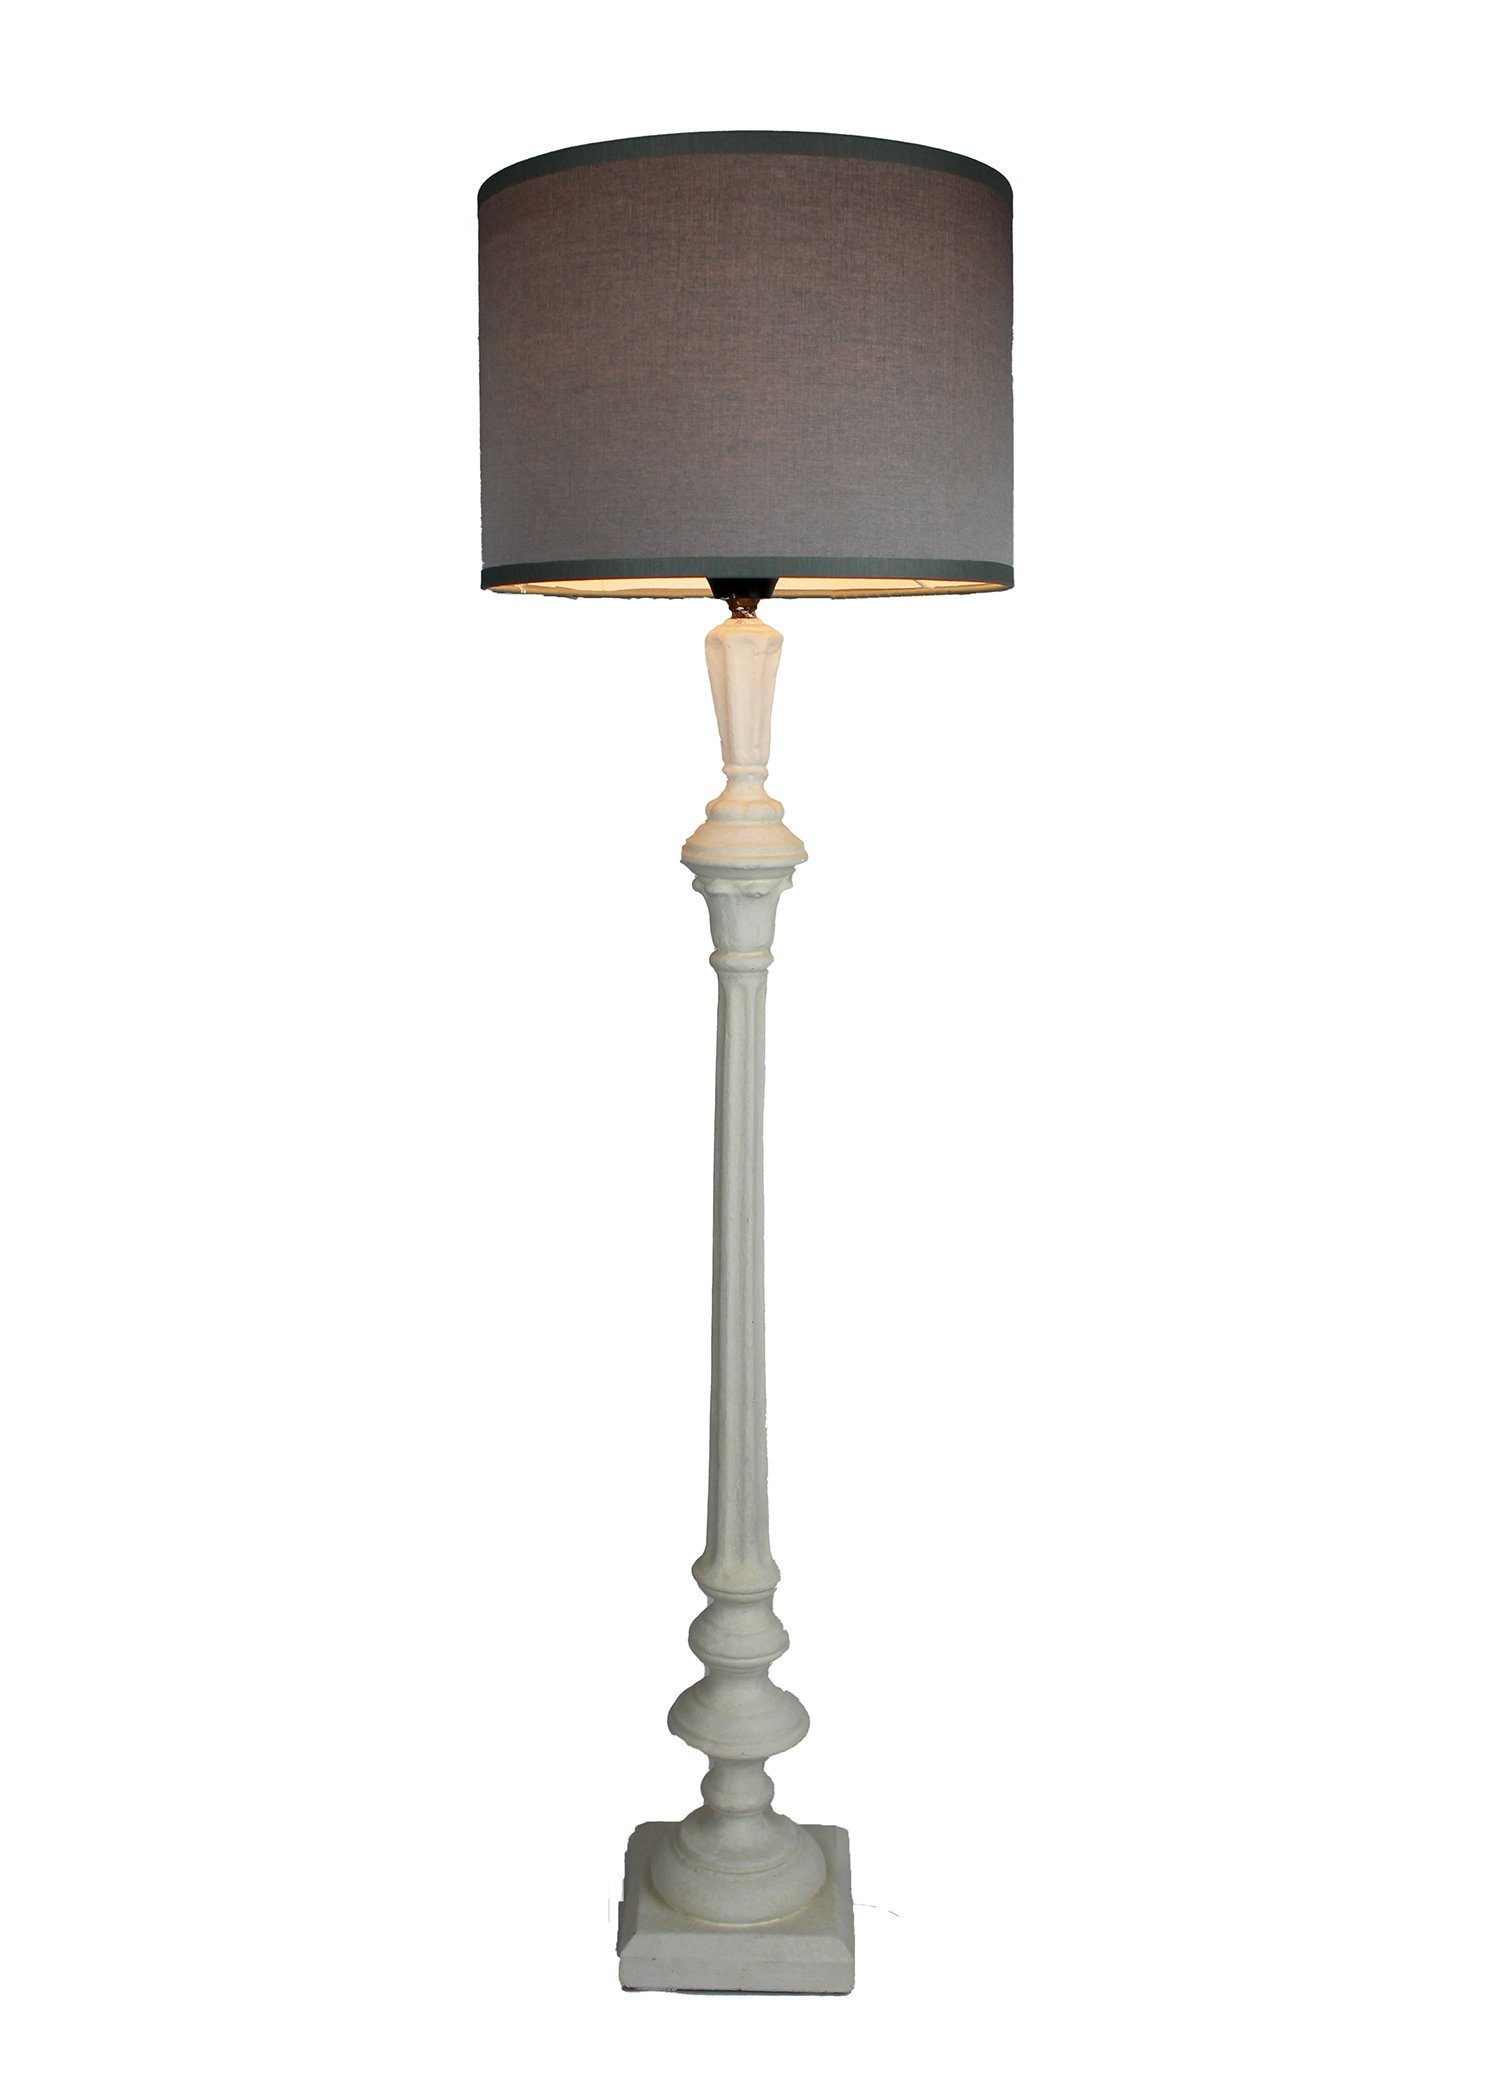 Signature Home Collection Tischleuchte Tischlampe schmal Holz gedrechselt lackiert mit Lampenschirm, ohne Leuchtmittel, warmweiß, handgefertigt in Italien weiß - grau | Tischlampen